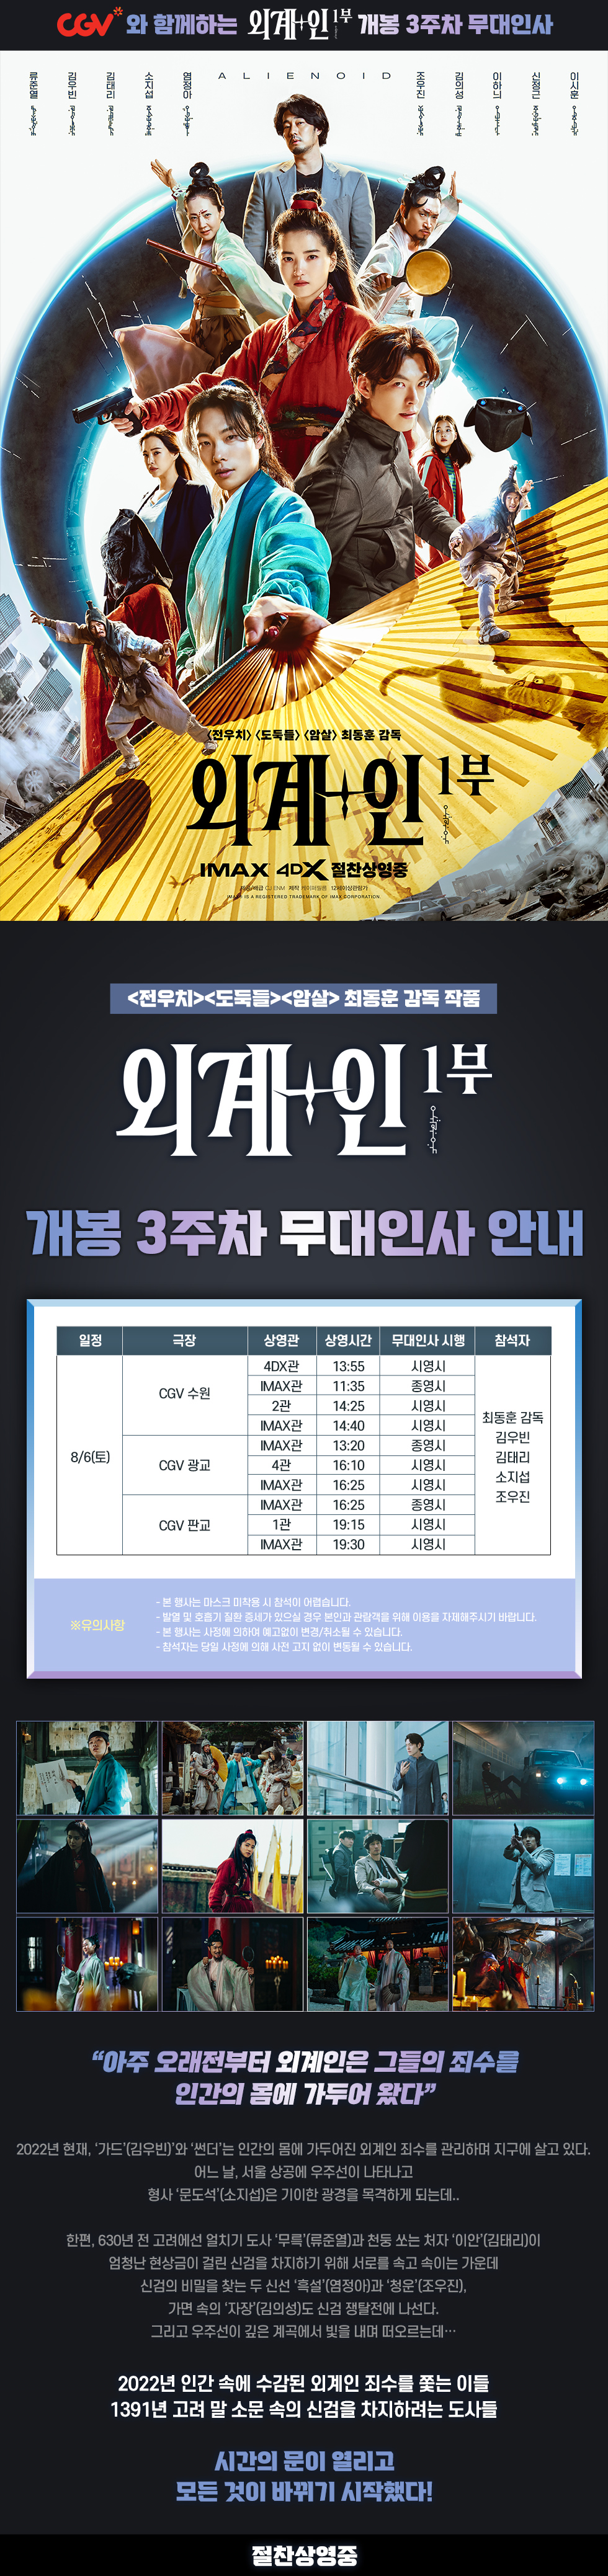 제휴/할인 [외계+인 1부] 개봉 3주차
무대인사